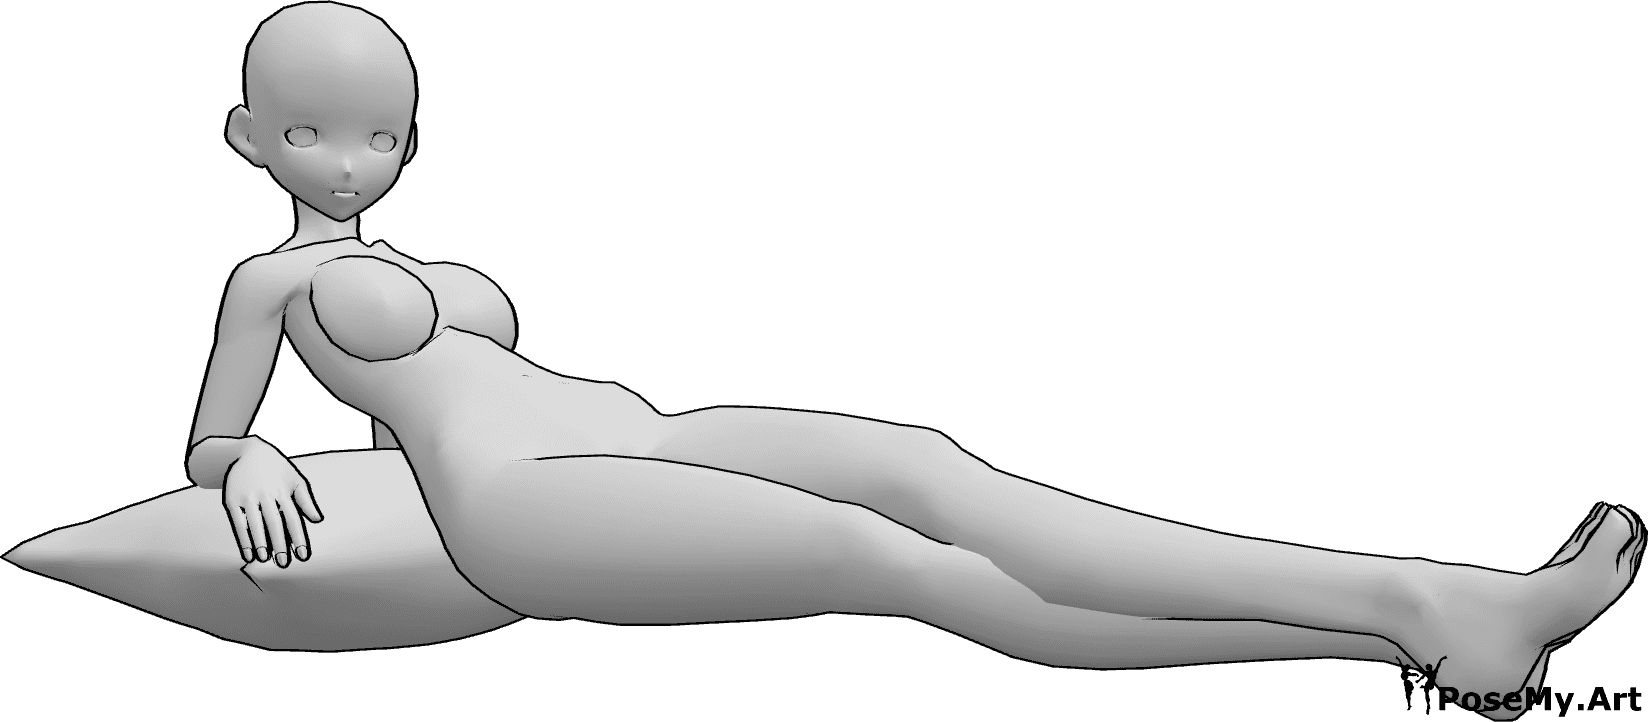 Référence des poses- Anime femme pose allongée - La femme animée est allongée et regarde vers la droite, appuyée sur un oreiller.